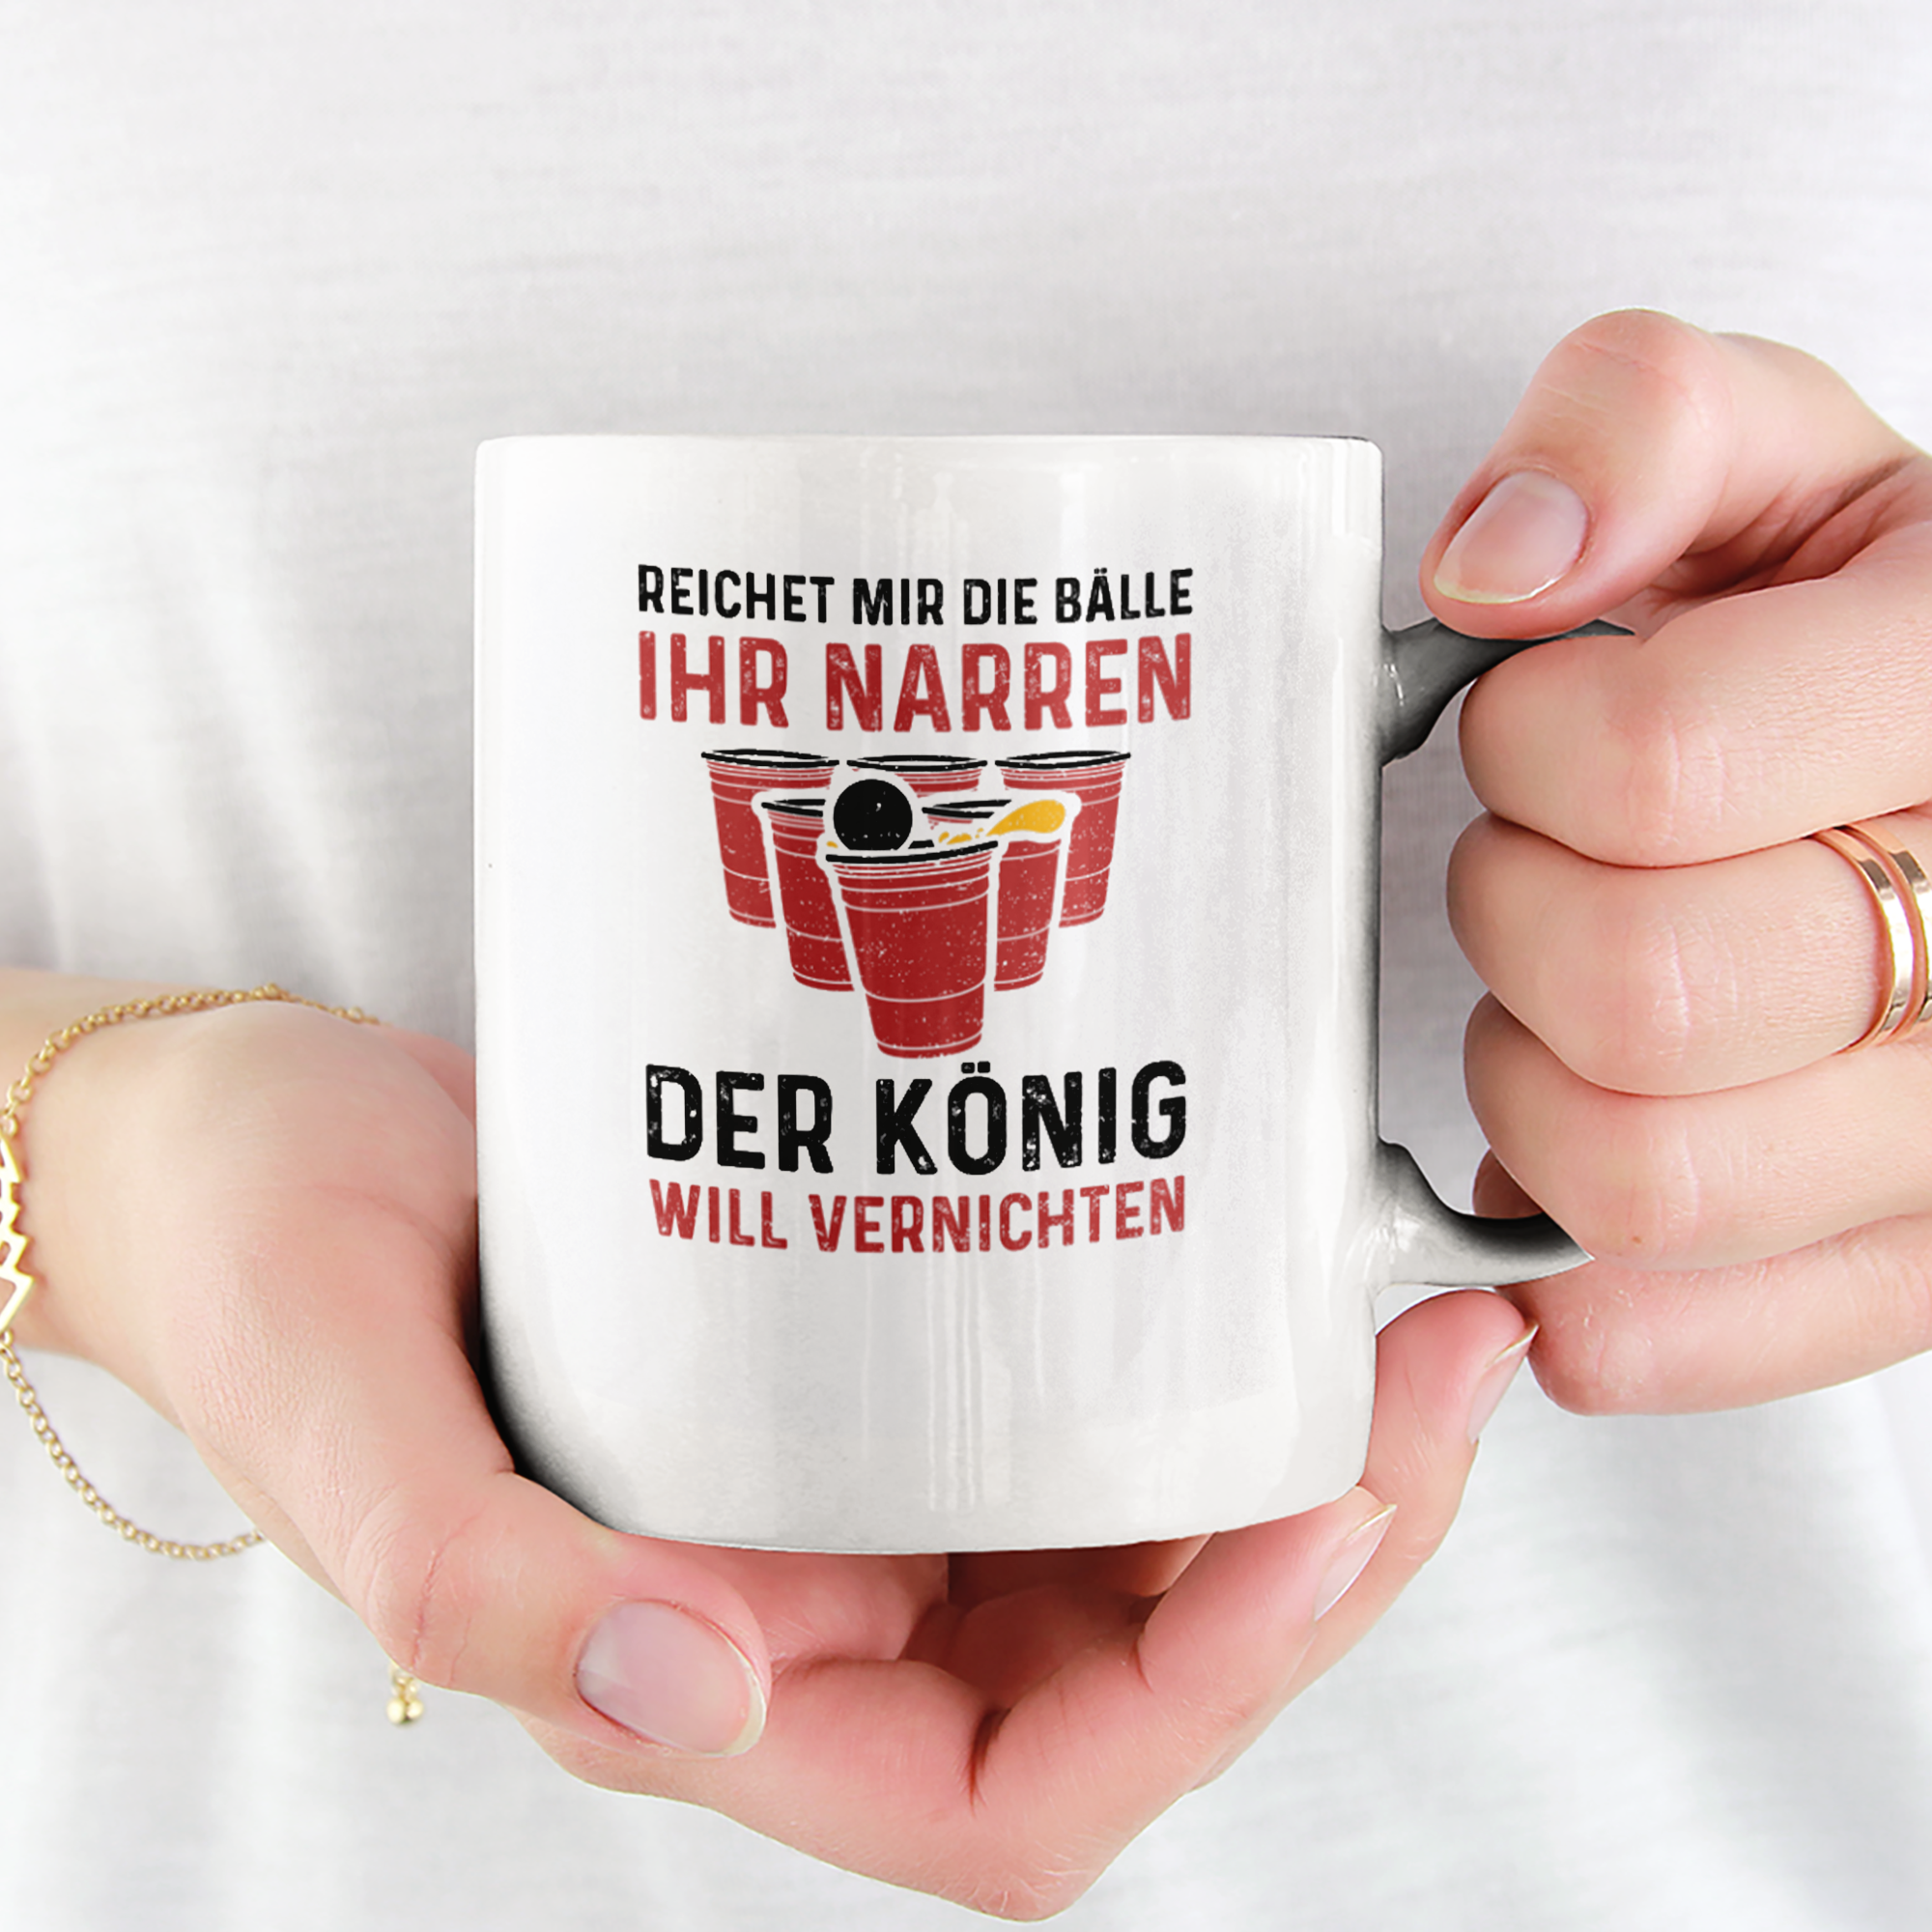 Reichet Mir Die Bälle Ihr Narren Der König Will Vernichten Tasse - DESIGNSBYJNK5.COM